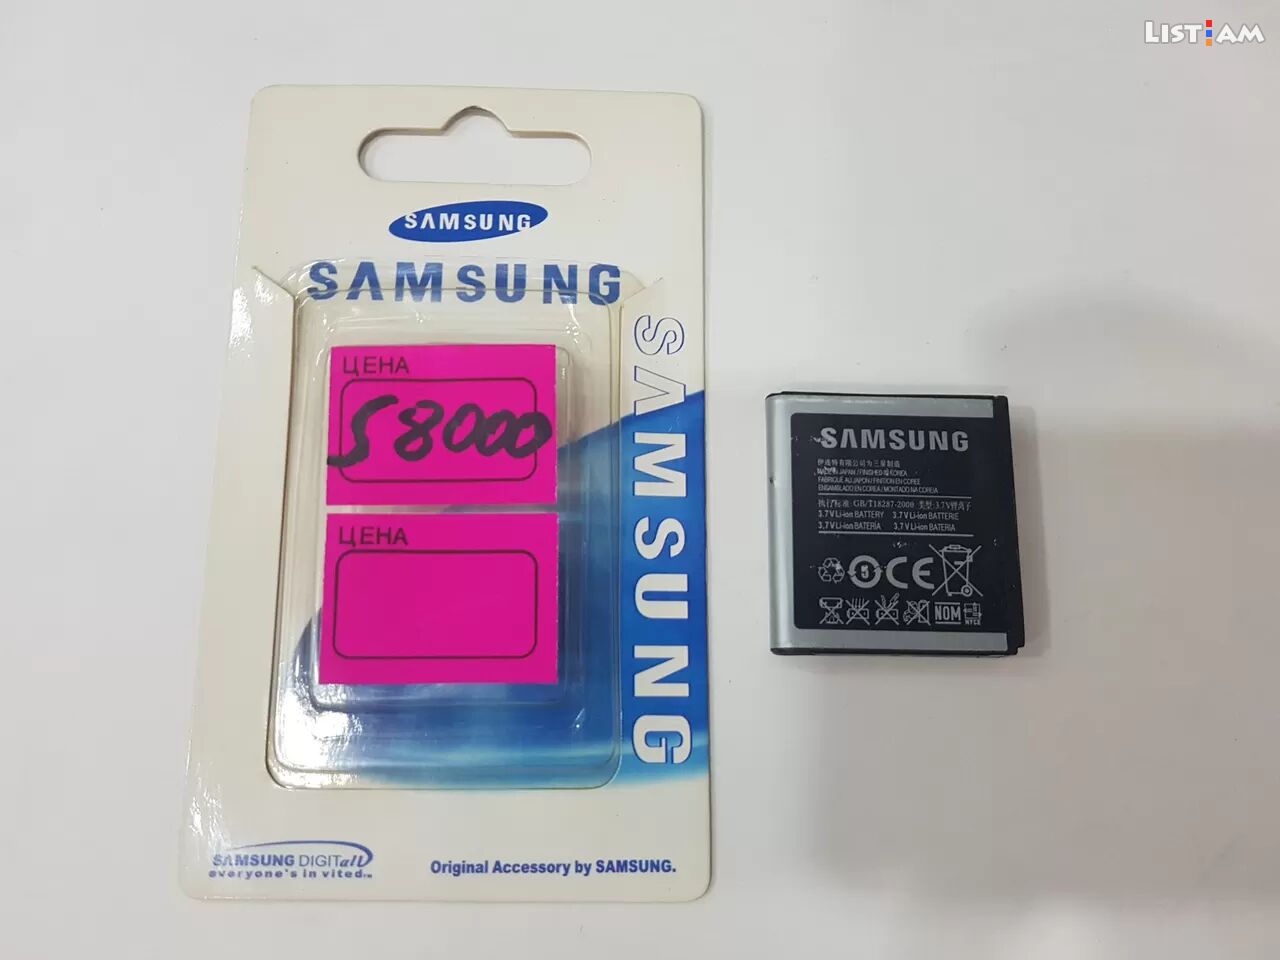 Samsung s8000